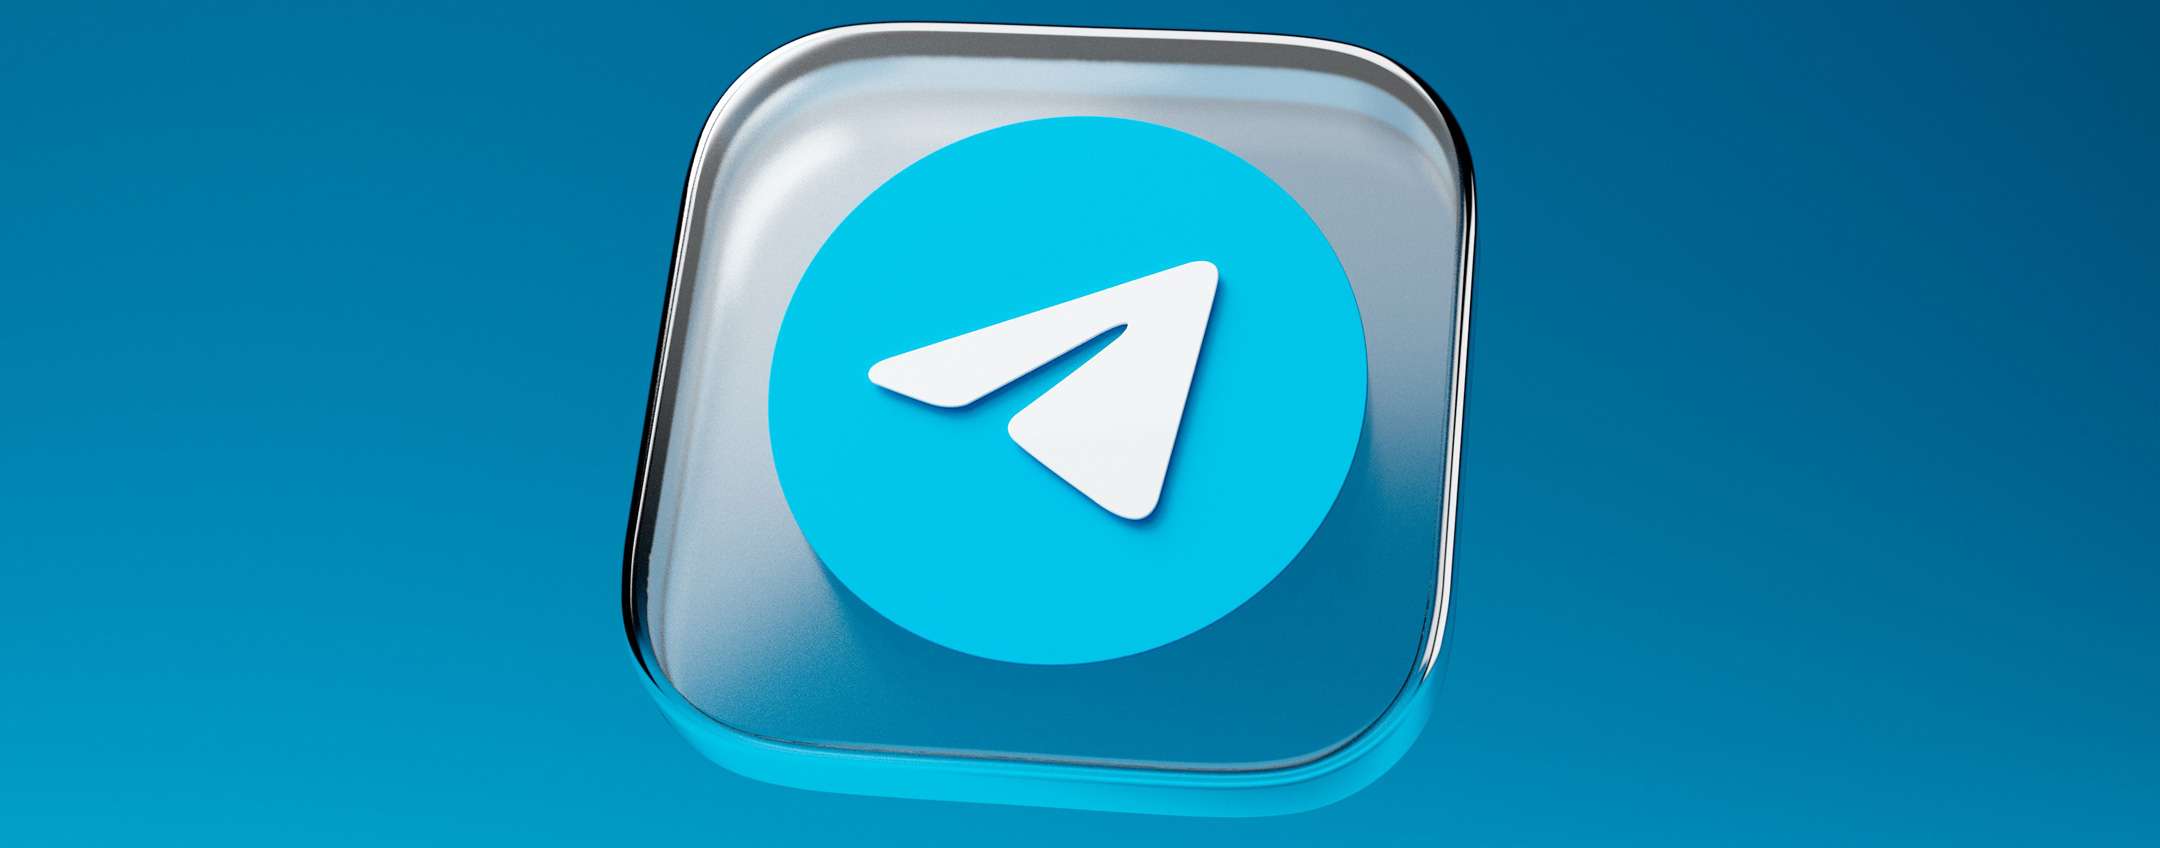 Последняя версия телеграмм для андроид на русском языке скачать бесплатно фото 117